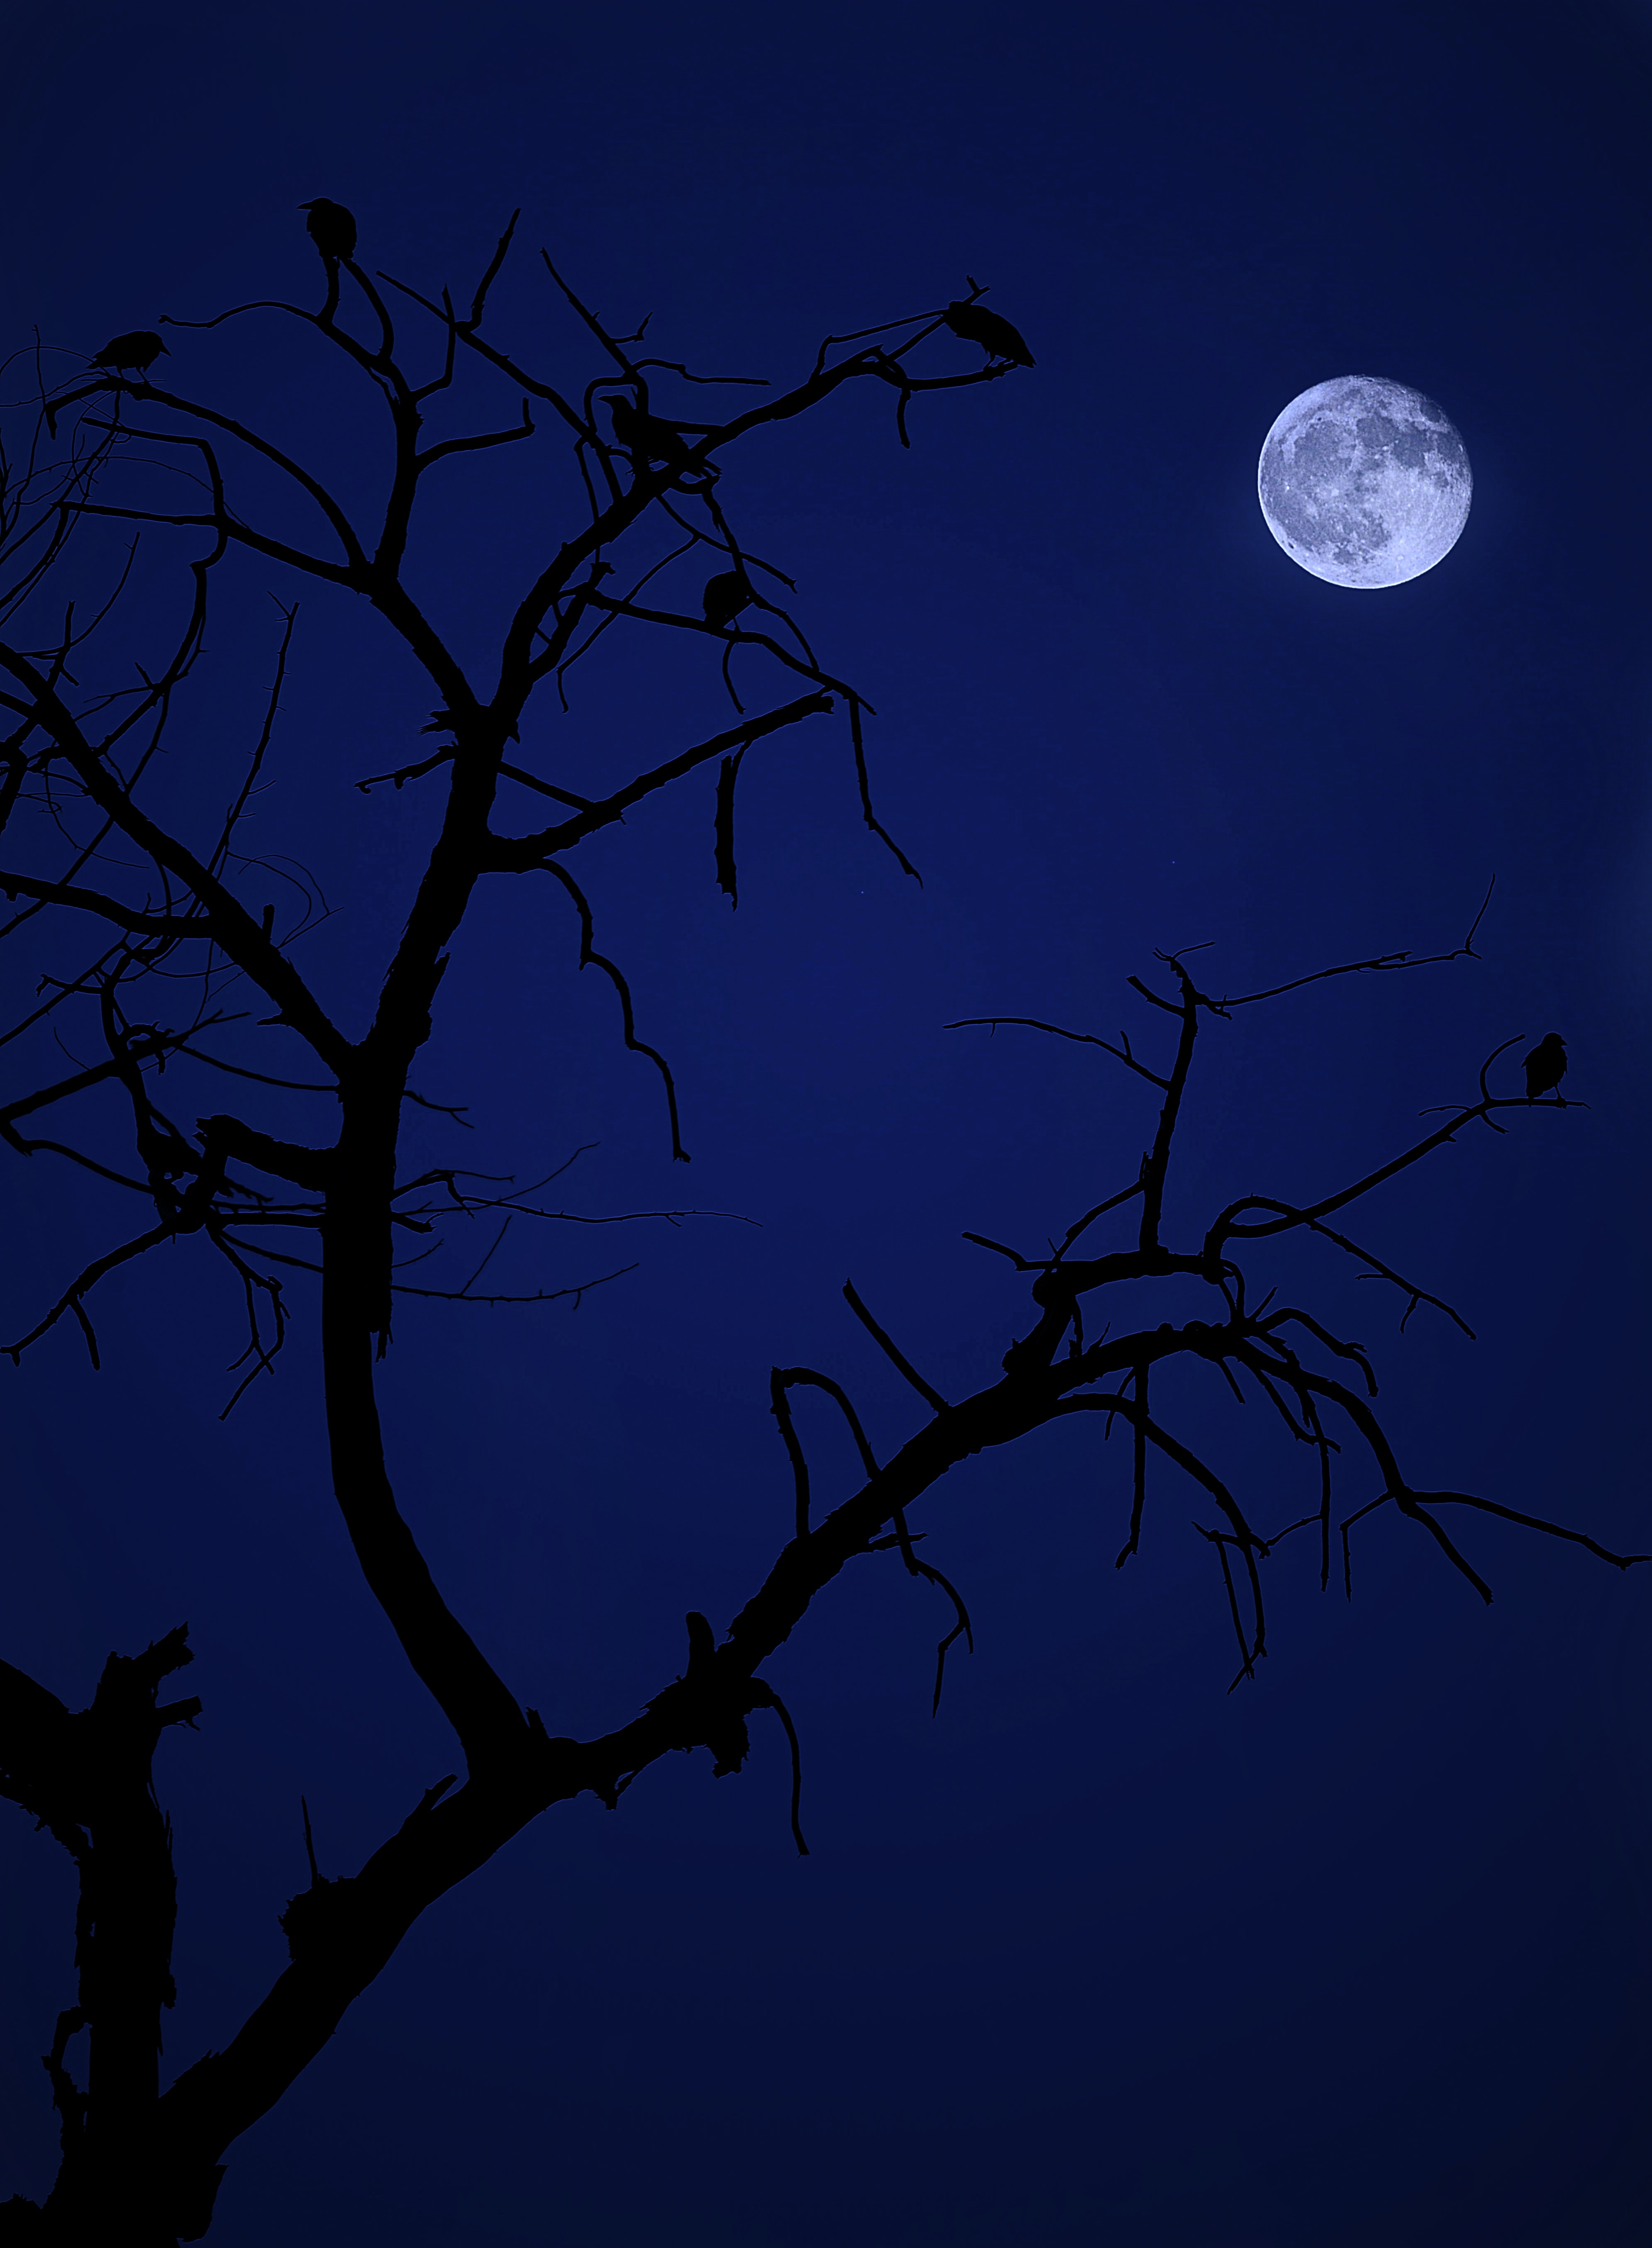 Скачать обои бесплатно Дерево, Темный, Птицы, Луна, Ночь, Темные картинка на рабочий стол ПК